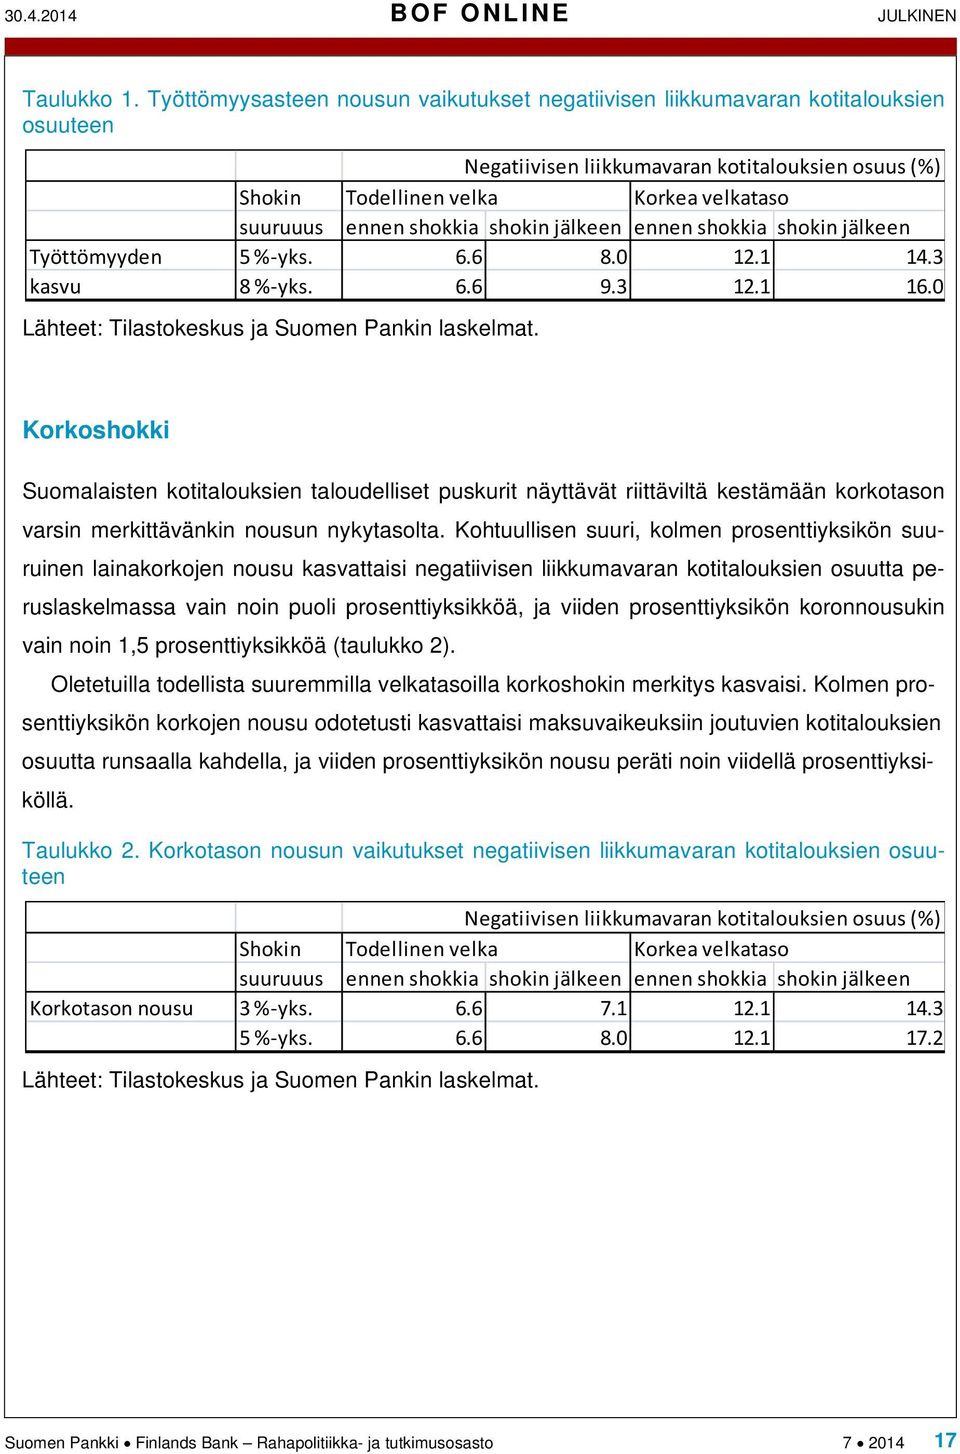 shokkia shokin jälkeen ennen shokkia shokin jälkeen Työttömyyden 5 %-yks. 6.6 8.0 12.1 14.3 kasvu 8 %-yks. 6.6 9.3 12.1 16.0 Lähteet: Tilastokeskus ja Suomen Pankin laskelmat.